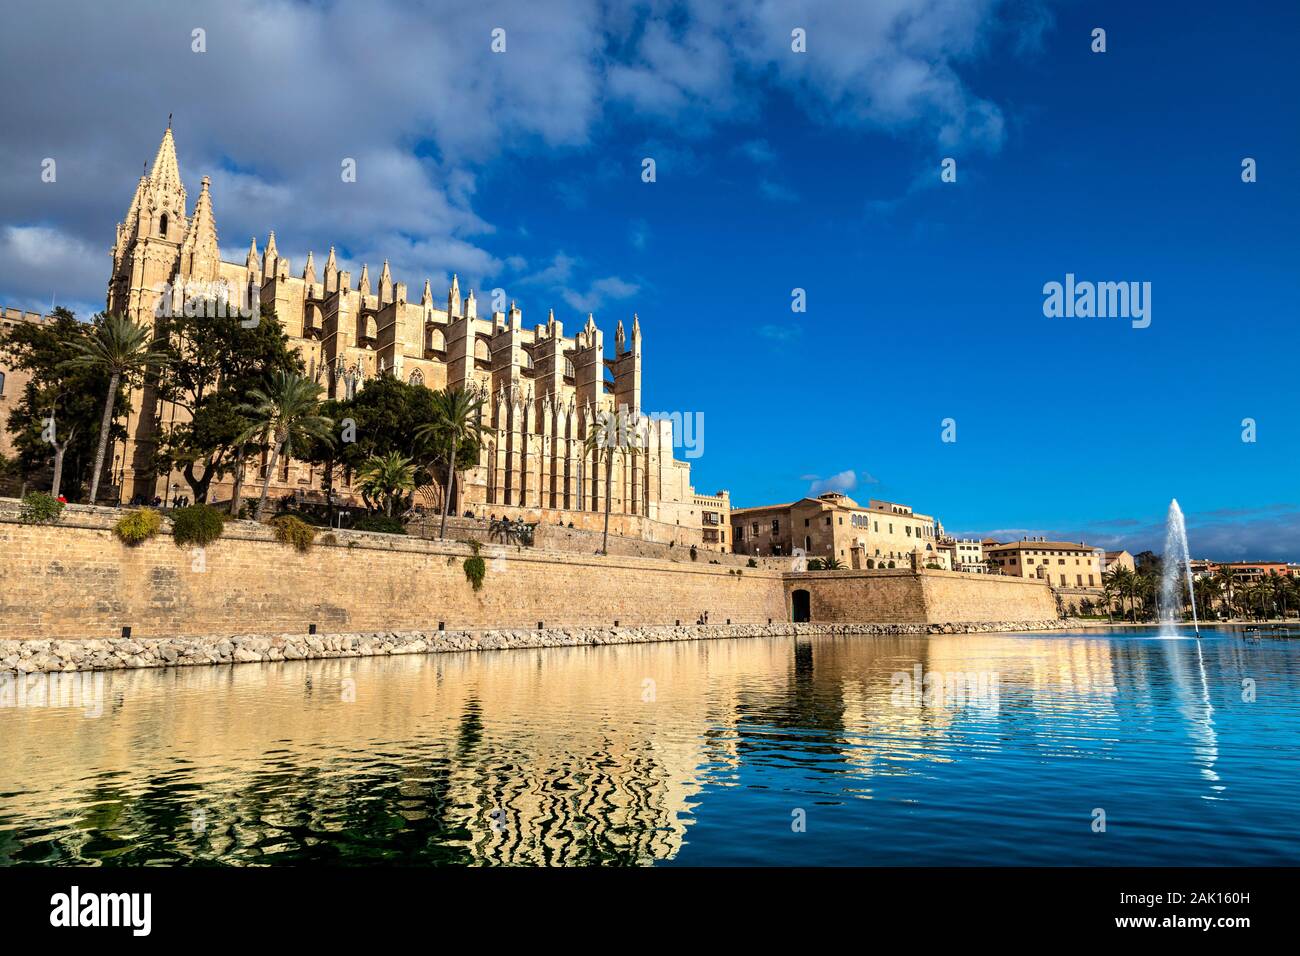 Vue sur le centre historique de Palma, la cathédrale et la fontaine du Parc de la Mar, Palma, Majorque, Espagne Banque D'Images